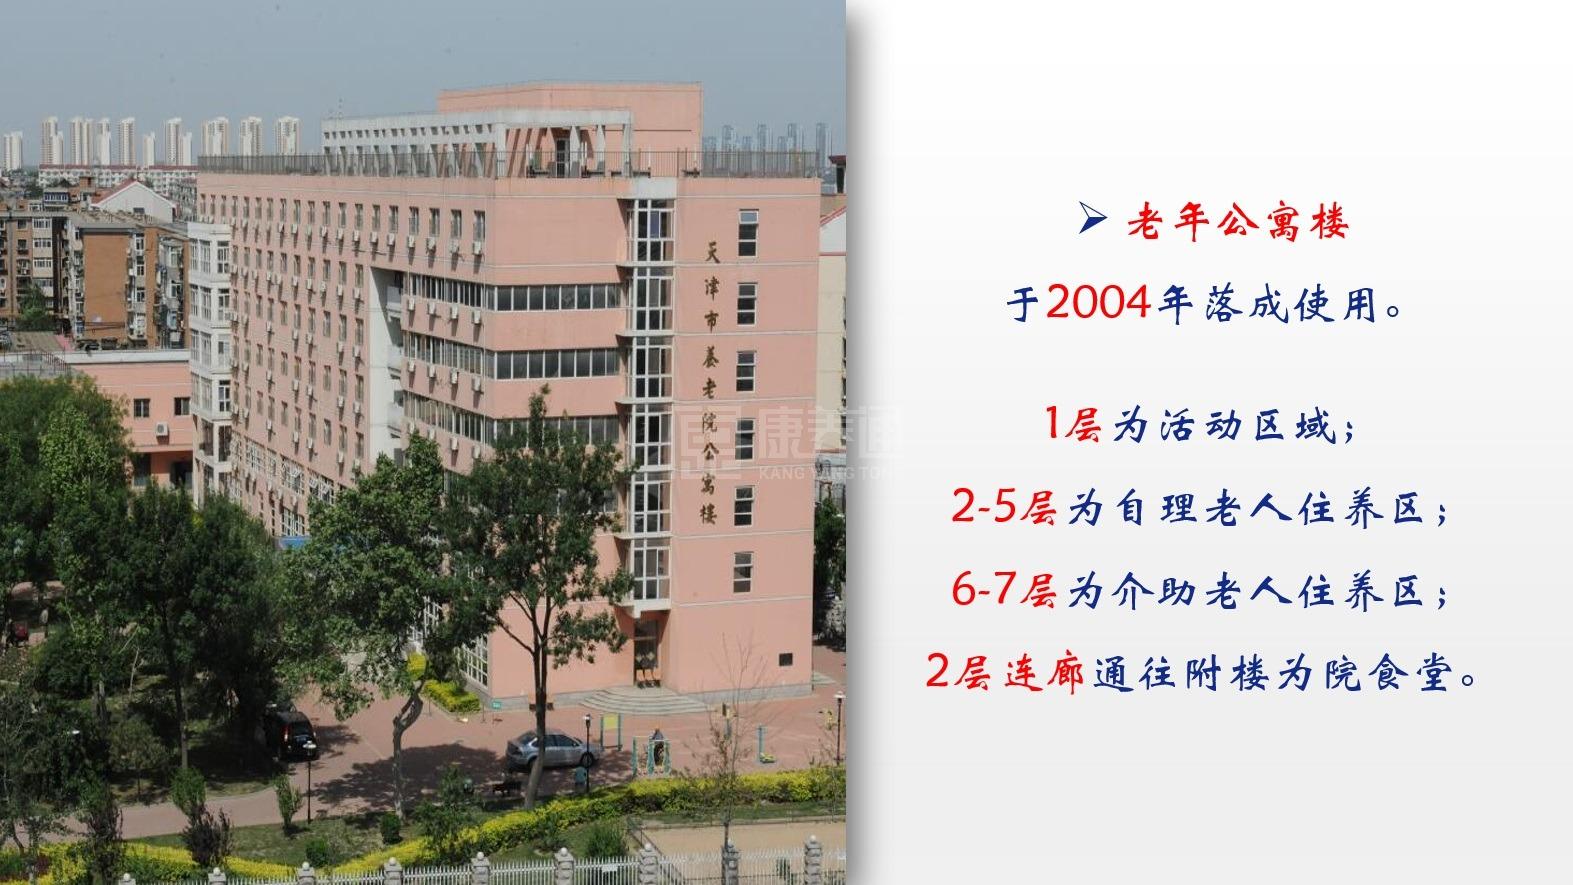 天津市养老院服务项目图2亦动亦静、亦新亦旧